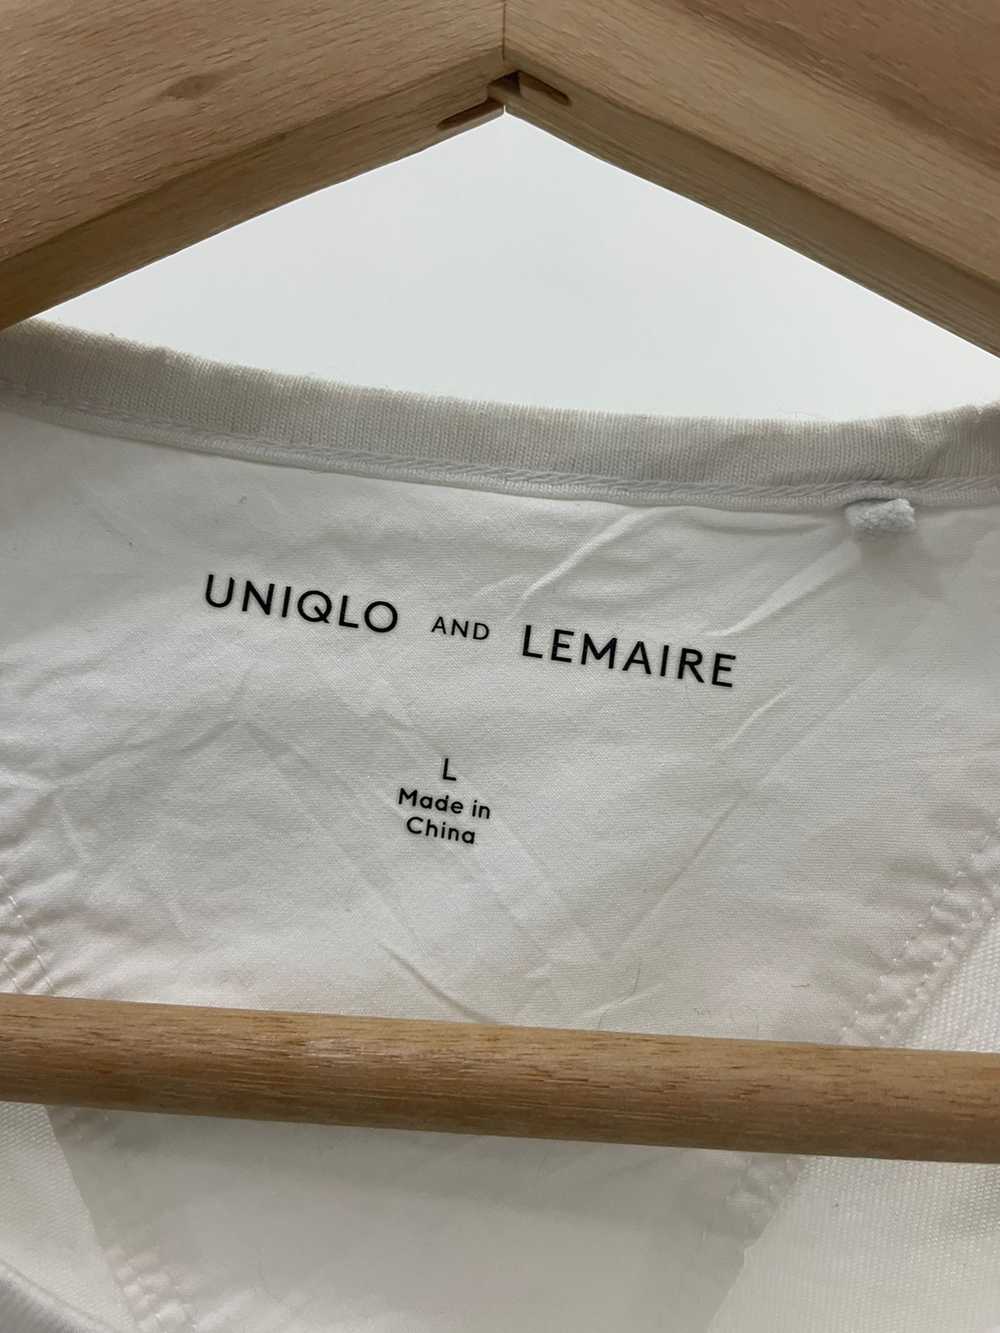 Uniqlo - Uniqlo Lemaire Single Pocket Tshirt - image 3